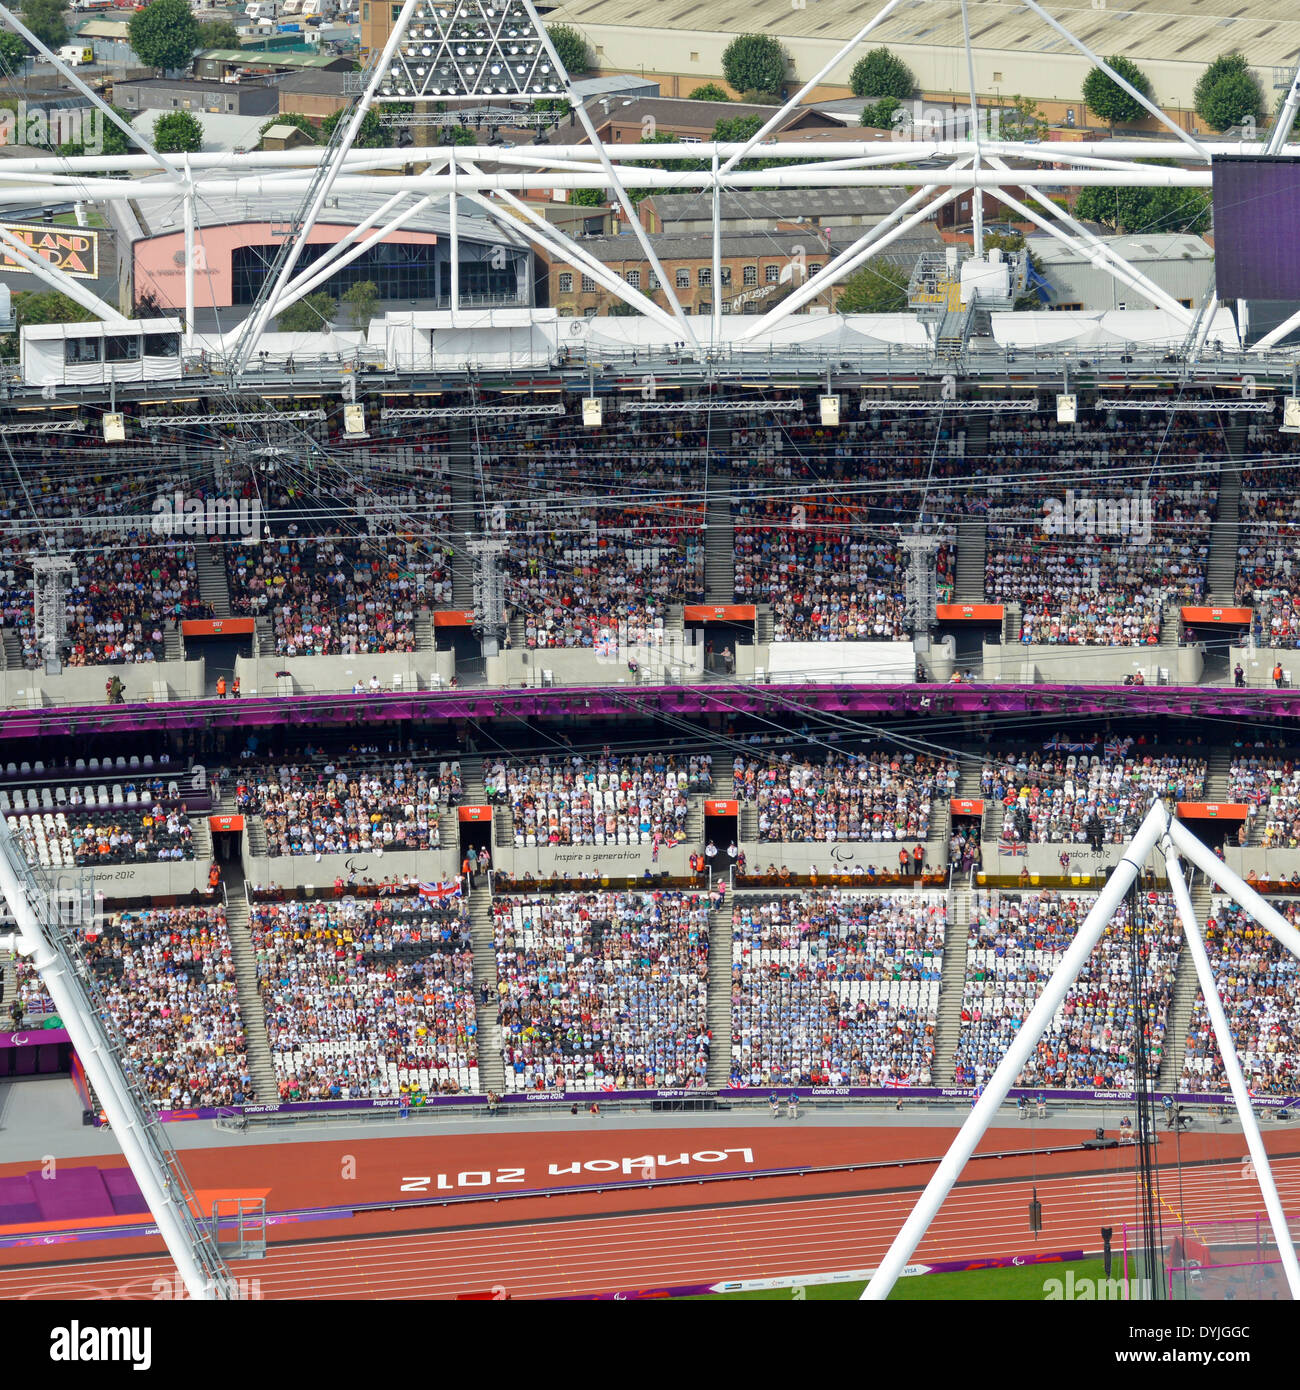 Spectateurs assis dans le stade d'athlétisme du parc olympique de Londres 2012 Plate-forme d'observation de la Tour Orbit d'ArcelorMittal pendant les Jeux paralympiques au Royaume-Uni Banque D'Images